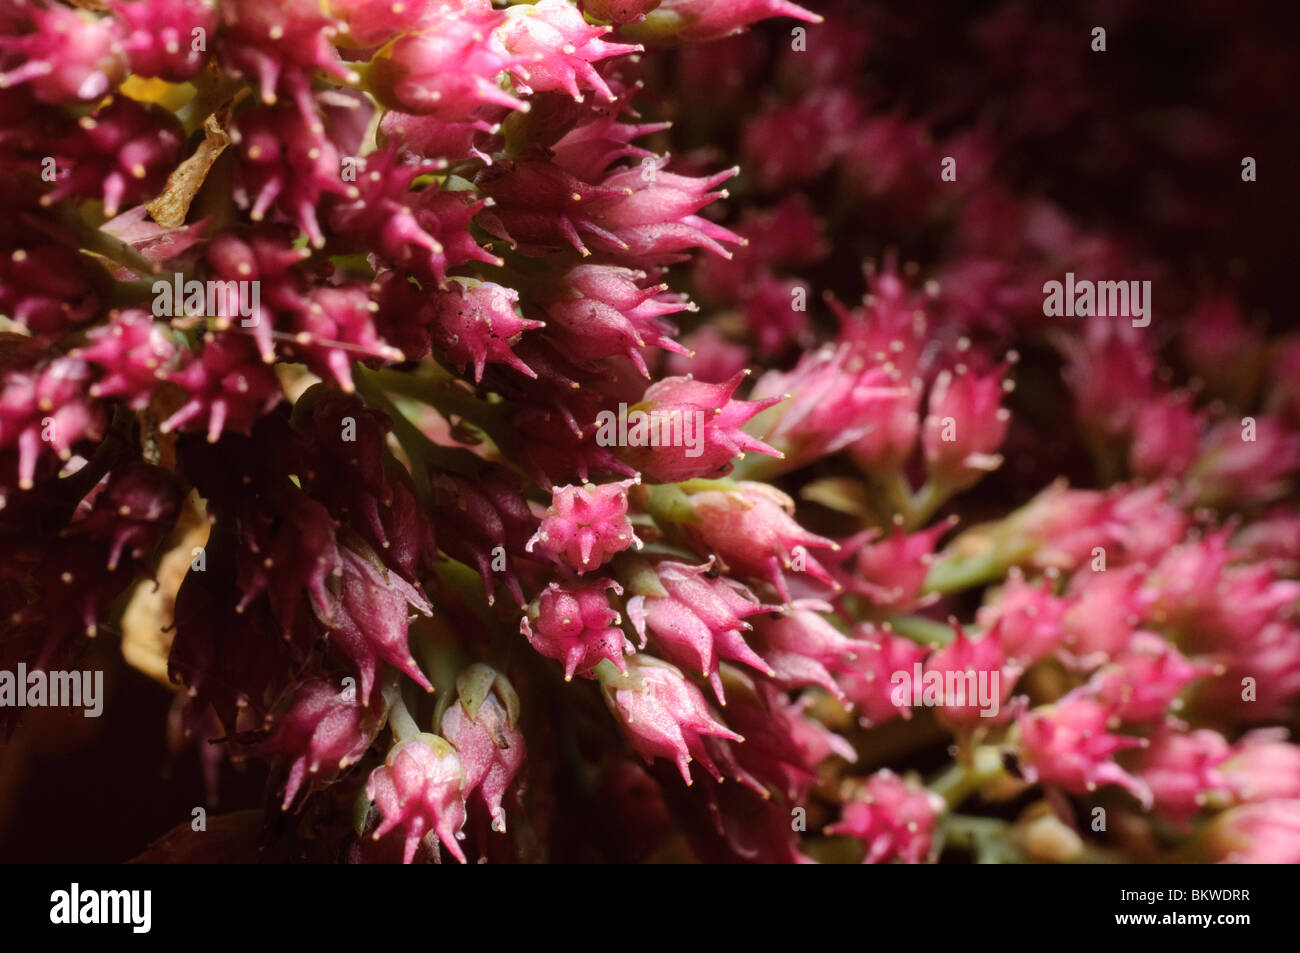 Close up detail of florets of sedum ice-plant (Sedum spectabile) Stock Photo